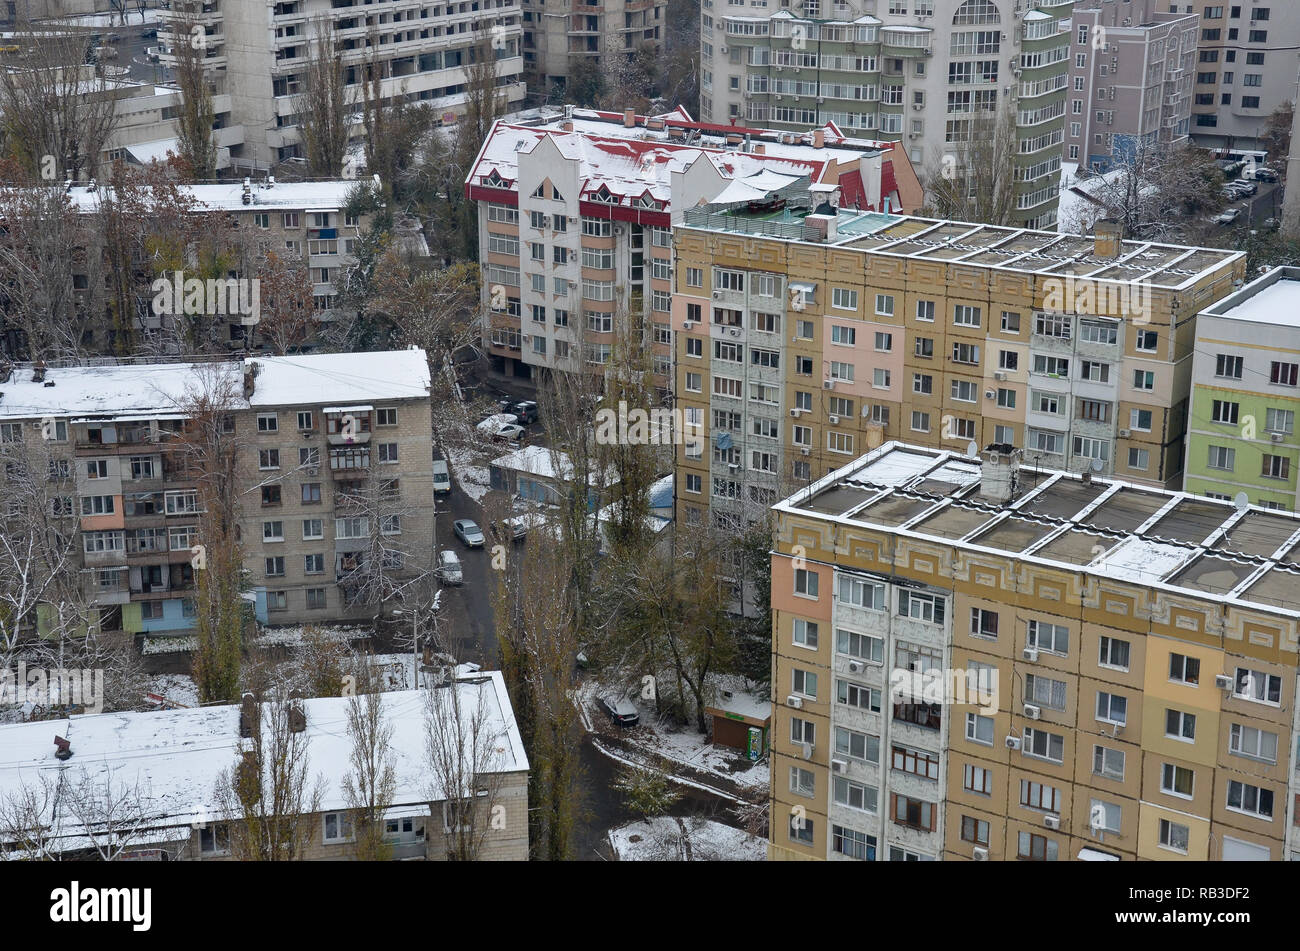 Anzeigen von Wohnhäusern der Hotel Cosmos, Chisinau (Chisinau), der Republik Moldau, November 2018 Stockfoto